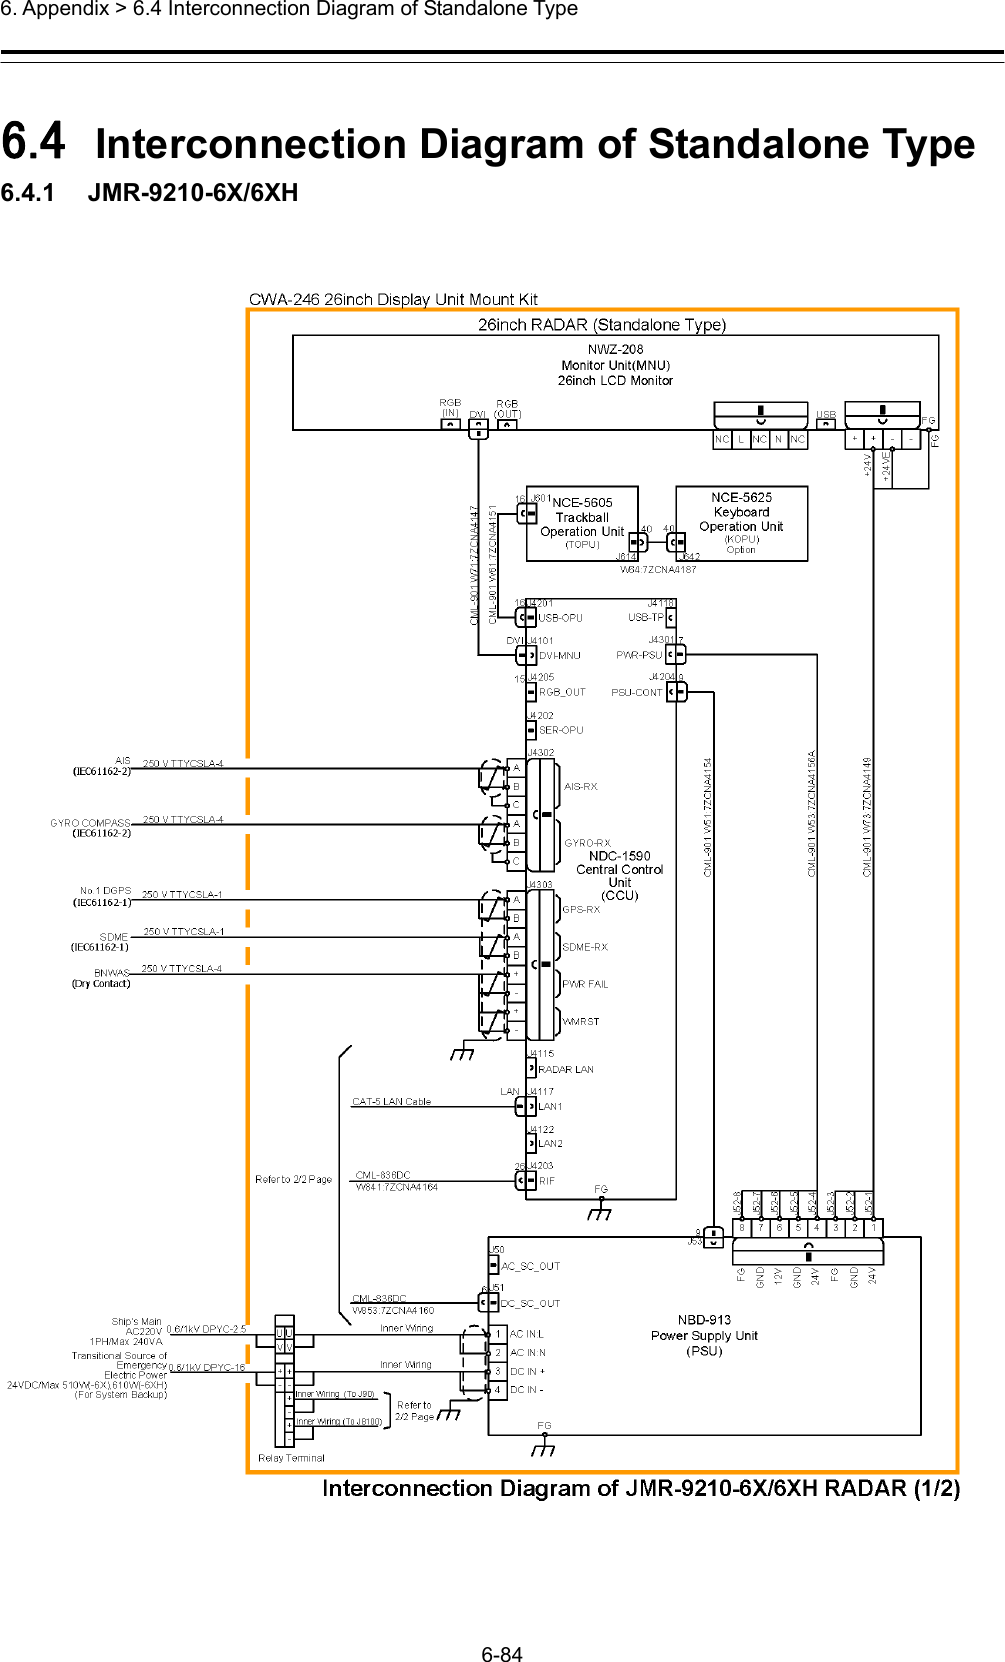  6. Appendix &gt; 6.4 Interconnection Diagram of Standalone Type 6-84  6.4  Interconnection Diagram of Standalone Type 6.4.1   JMR-9210-6X/6XH 